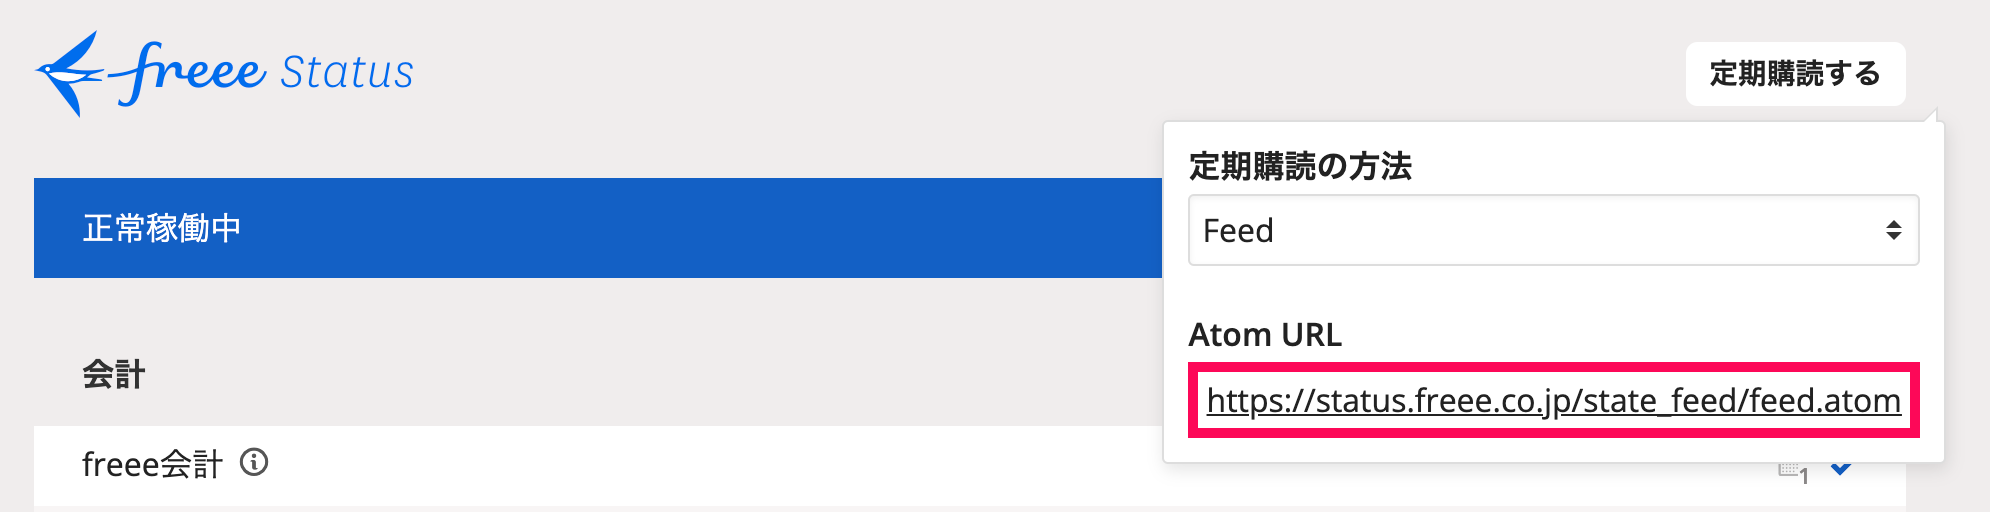 「Atom URL」を指し示しているスクリーンショット